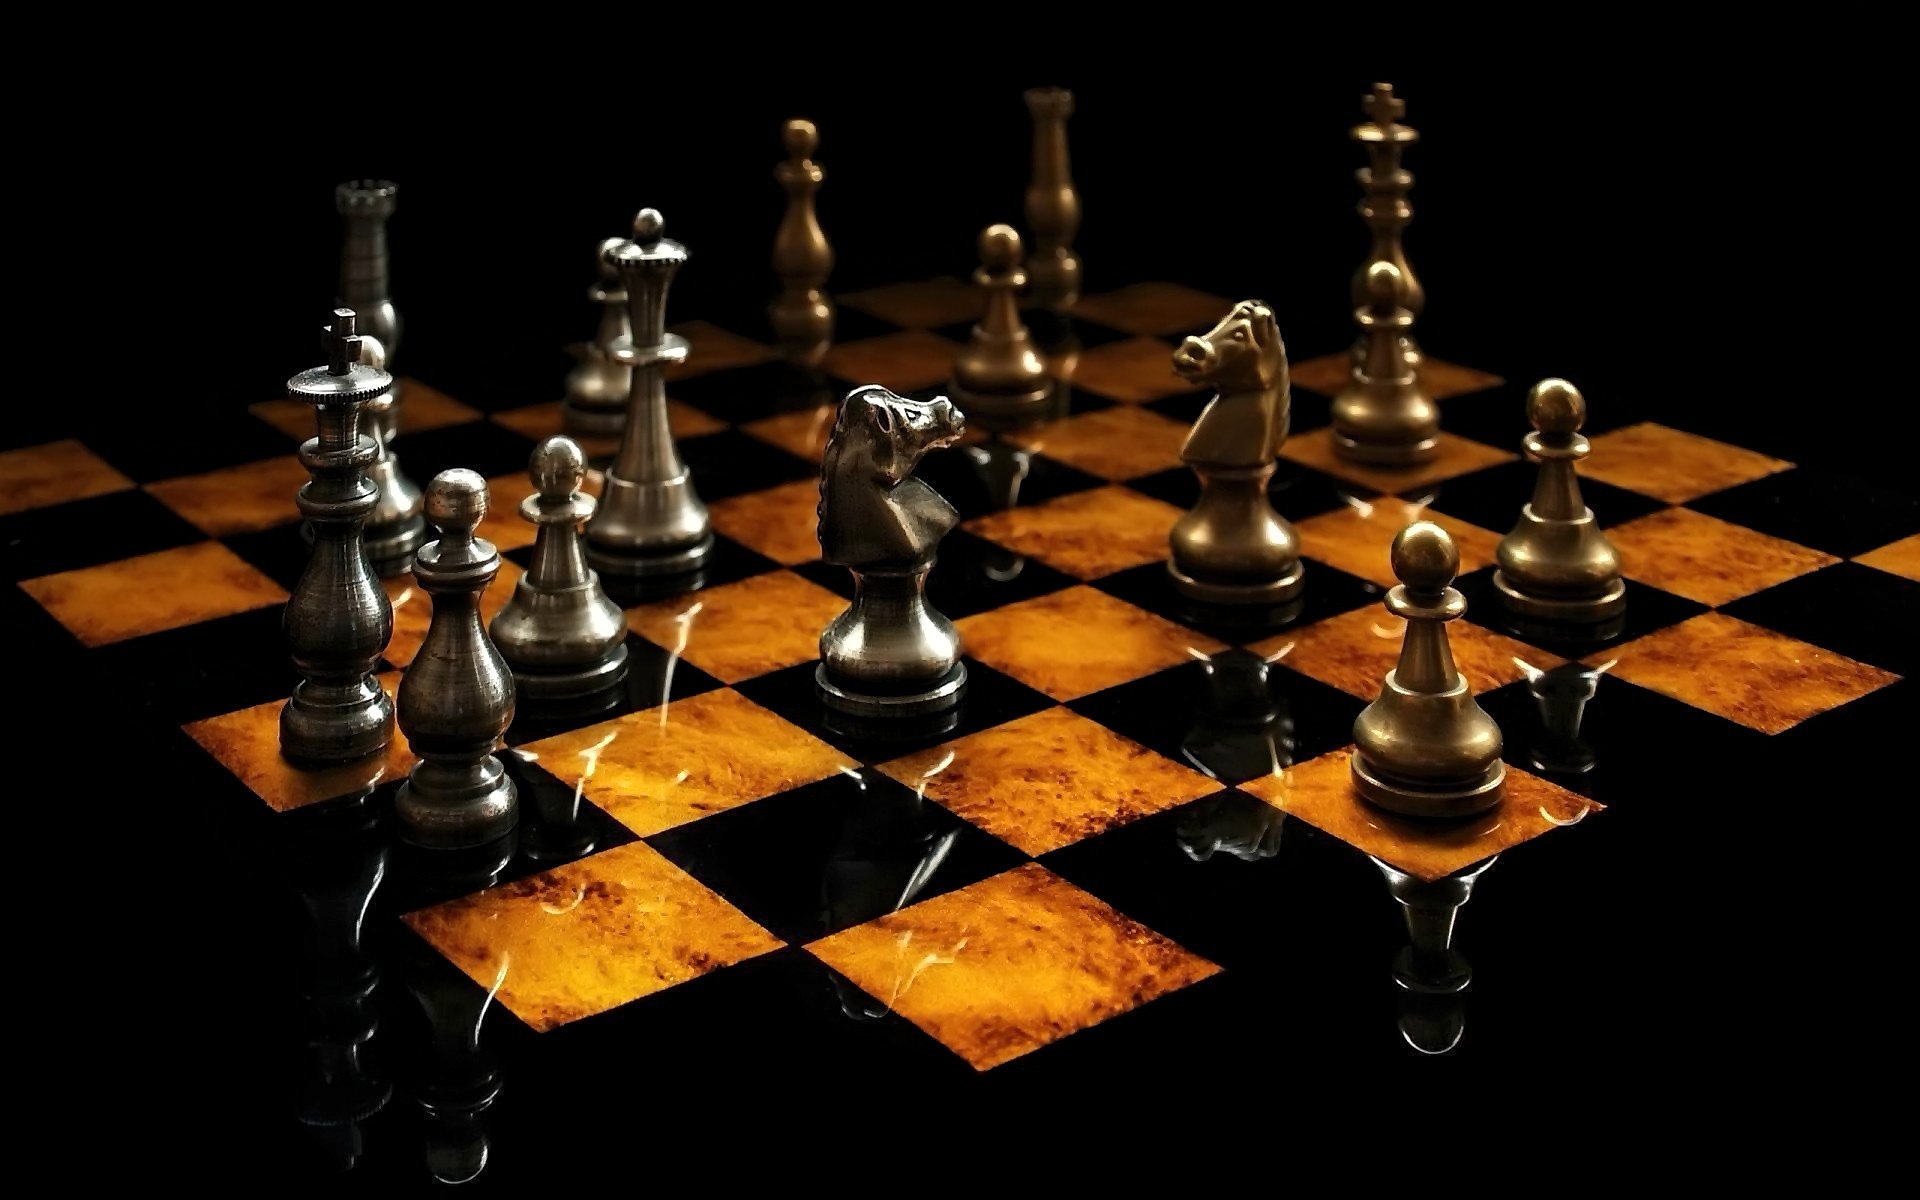 игра, шахматы, доска, фигуры, конь, пешка, отражение, свет, ферзь, король